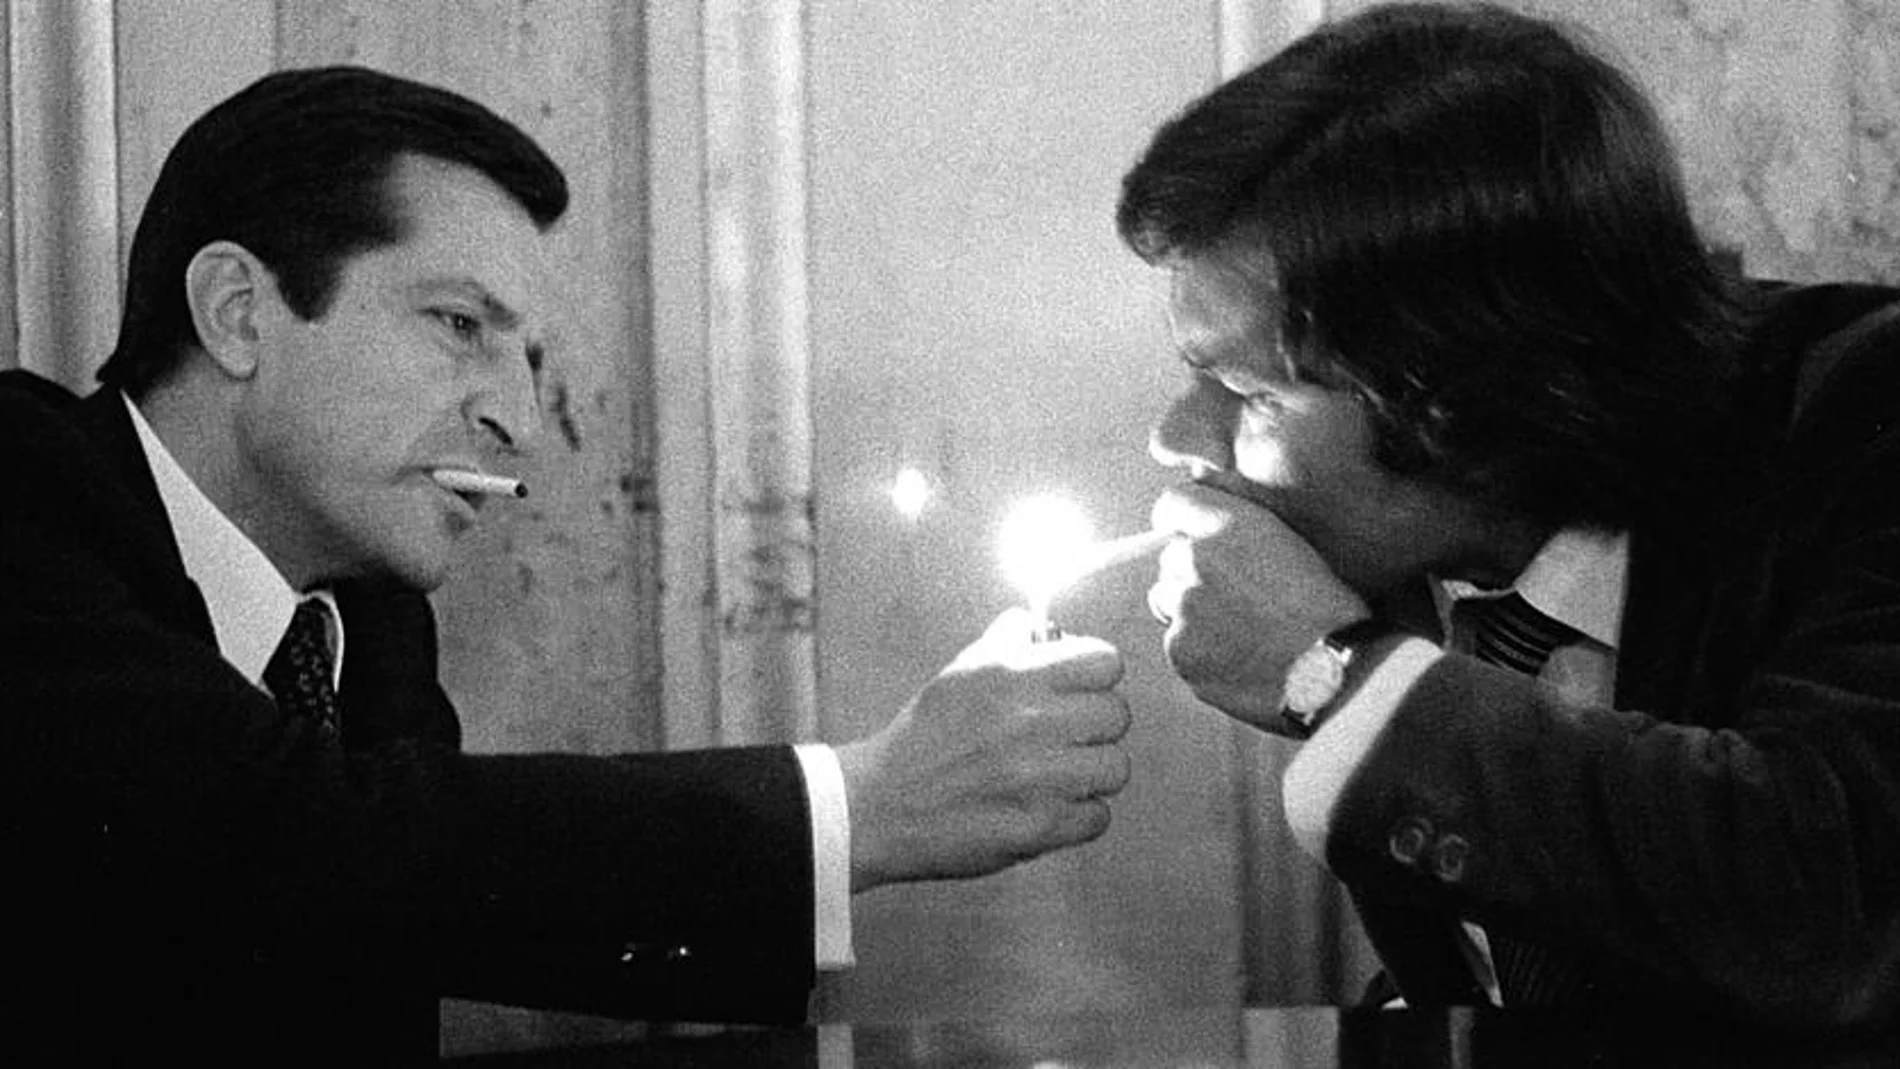 Adolfo Suarez enciende el cigarrillo de Felipe Gonzalez en una sala del Congreso de los Diputados, en octubre de 1978, cuando se negociaban los Pactos de la Moncloa.